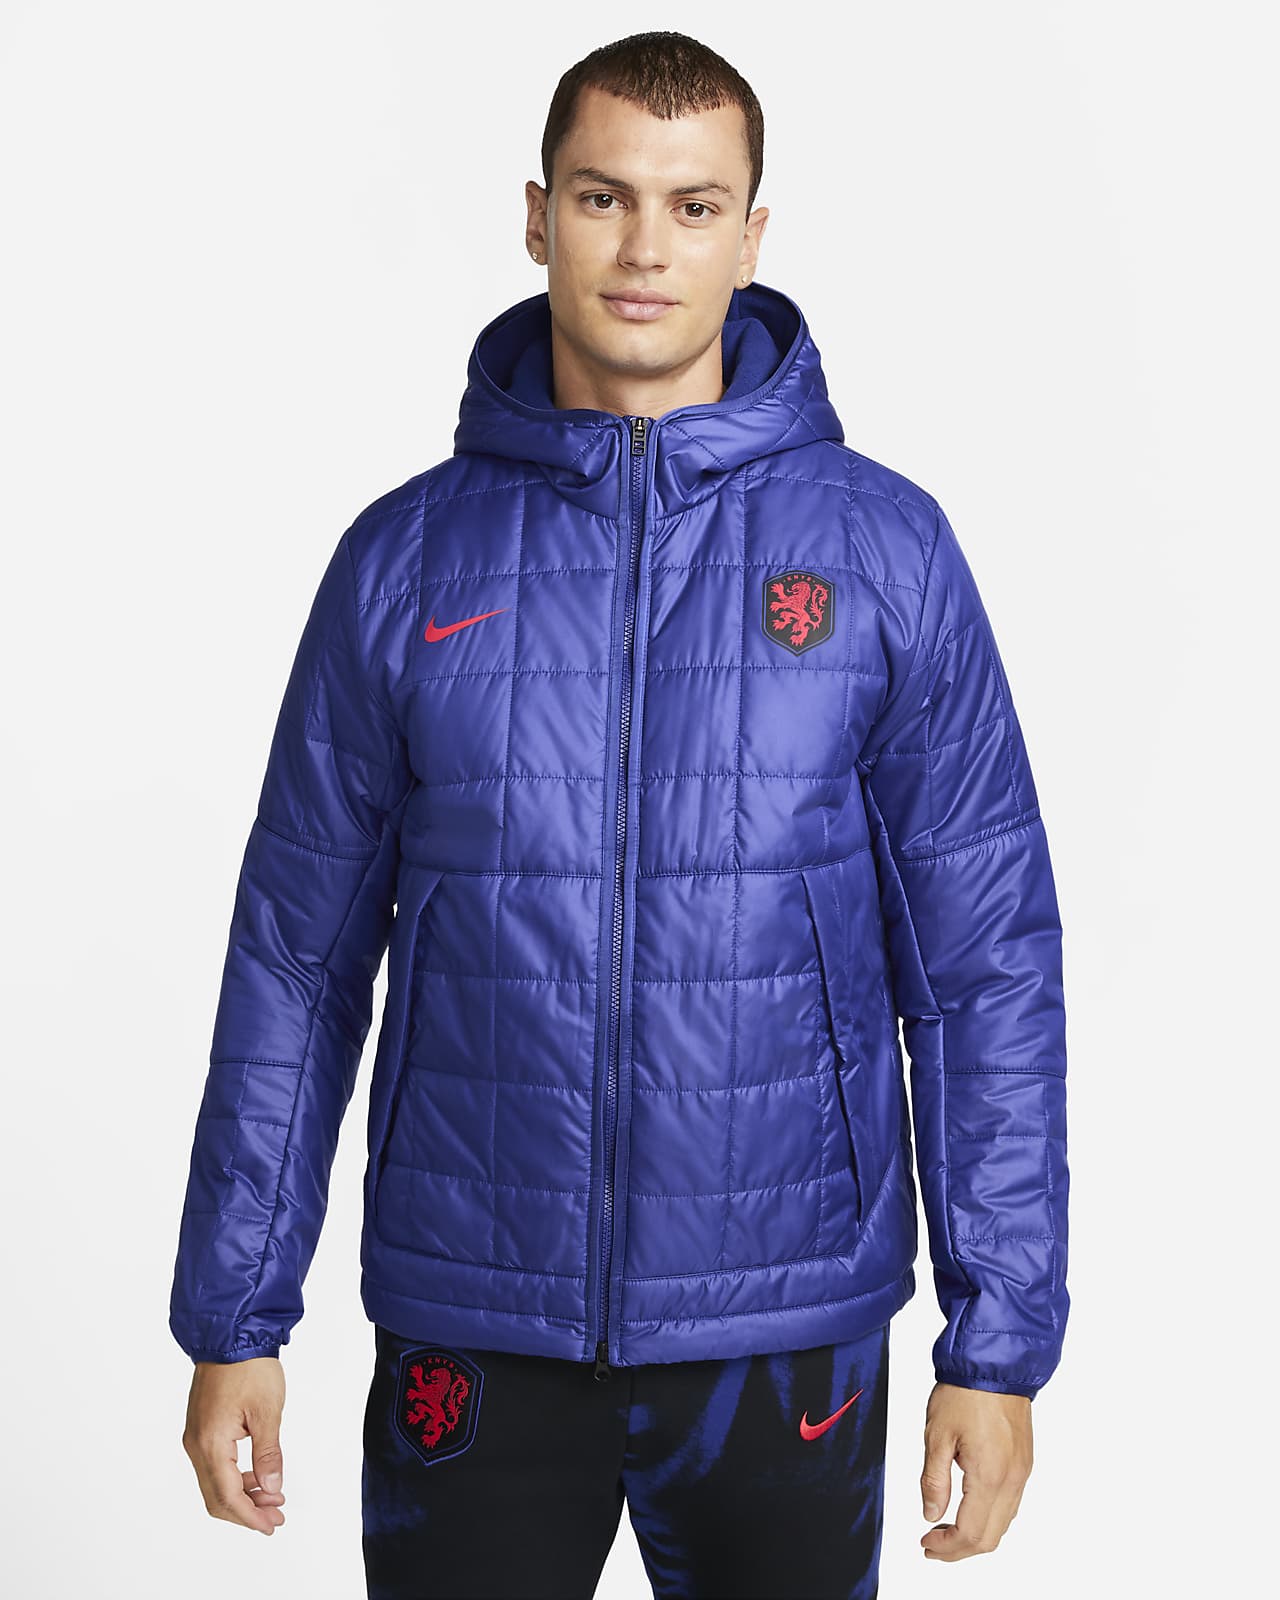 Hollanda Nike Fleece Astarlı Kapüşonlu Erkek Ceketi